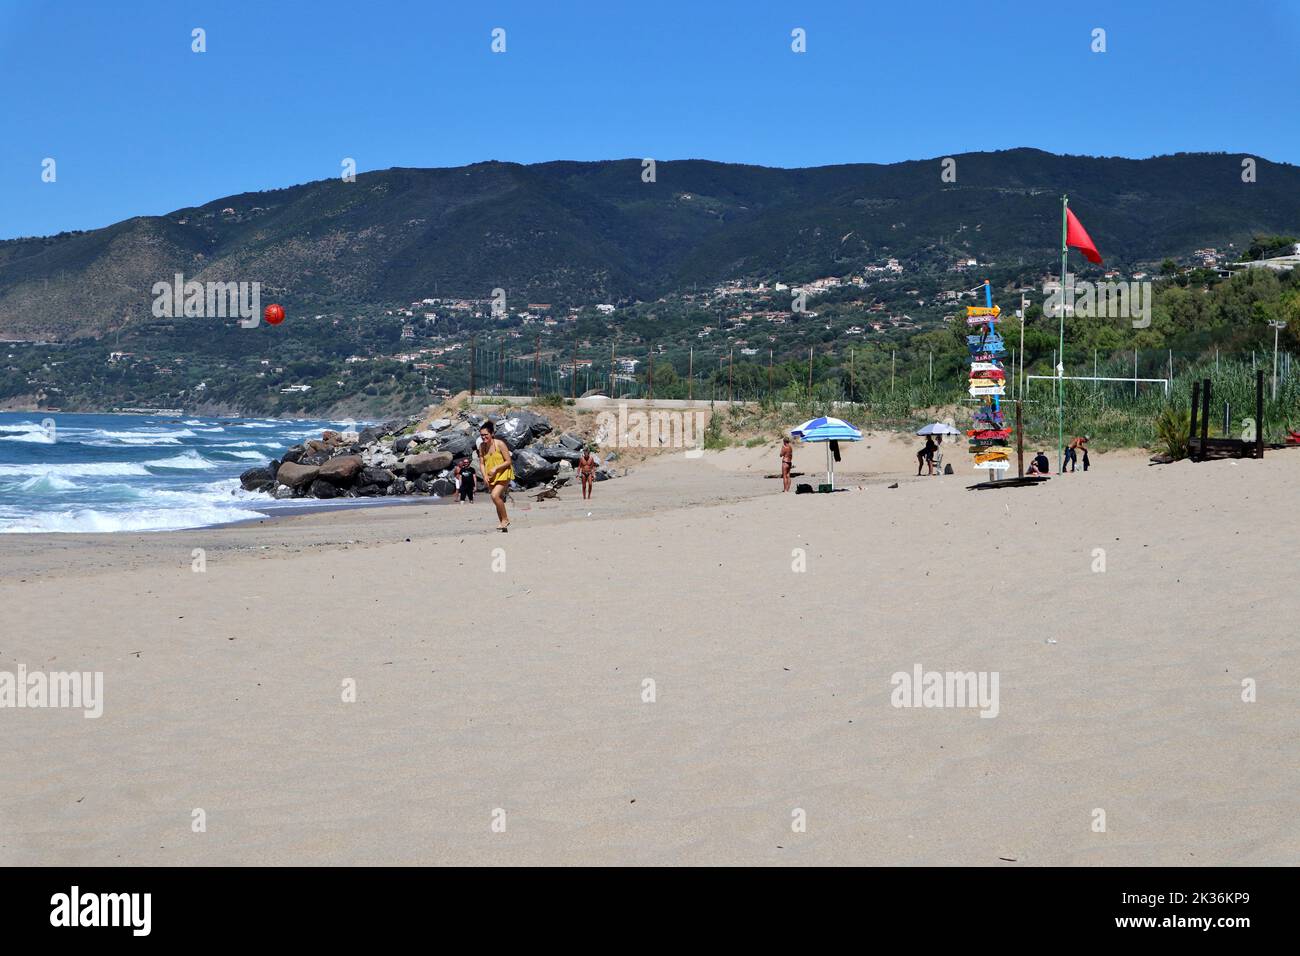 Palinuro - Turisti sulla spiaggia libera presso il lido Sunset Club Beach Stock Photo